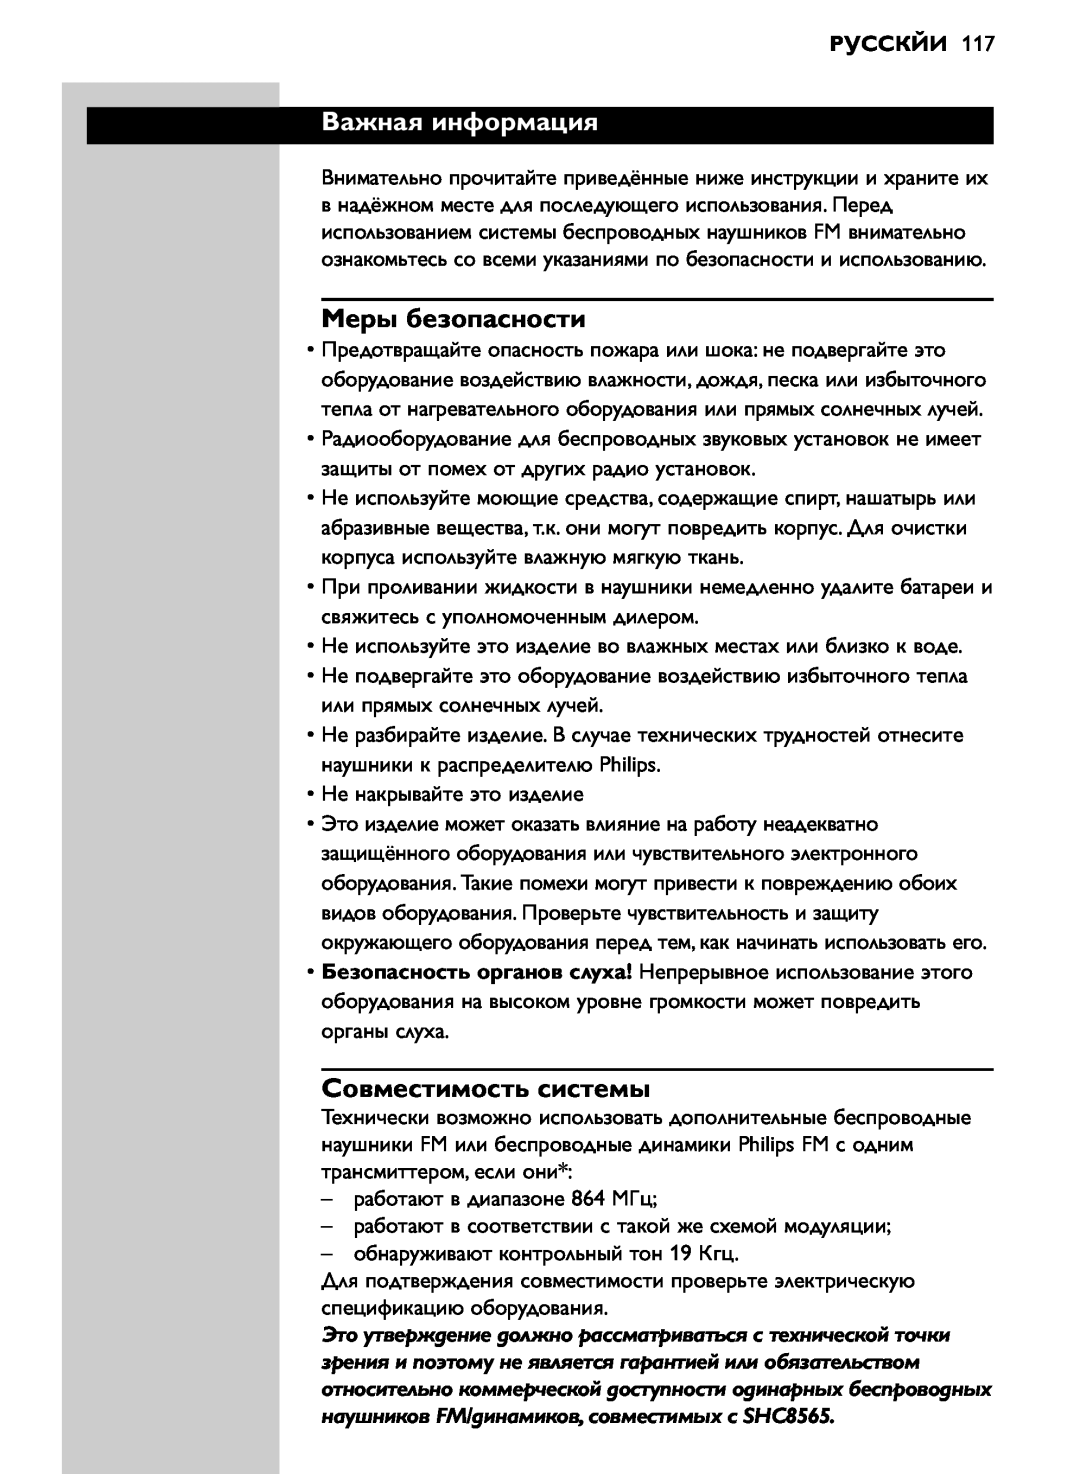 Philips SHC8565/00 manual Важная информация, Меры безопасности, Совместимость системы, Русскйи 